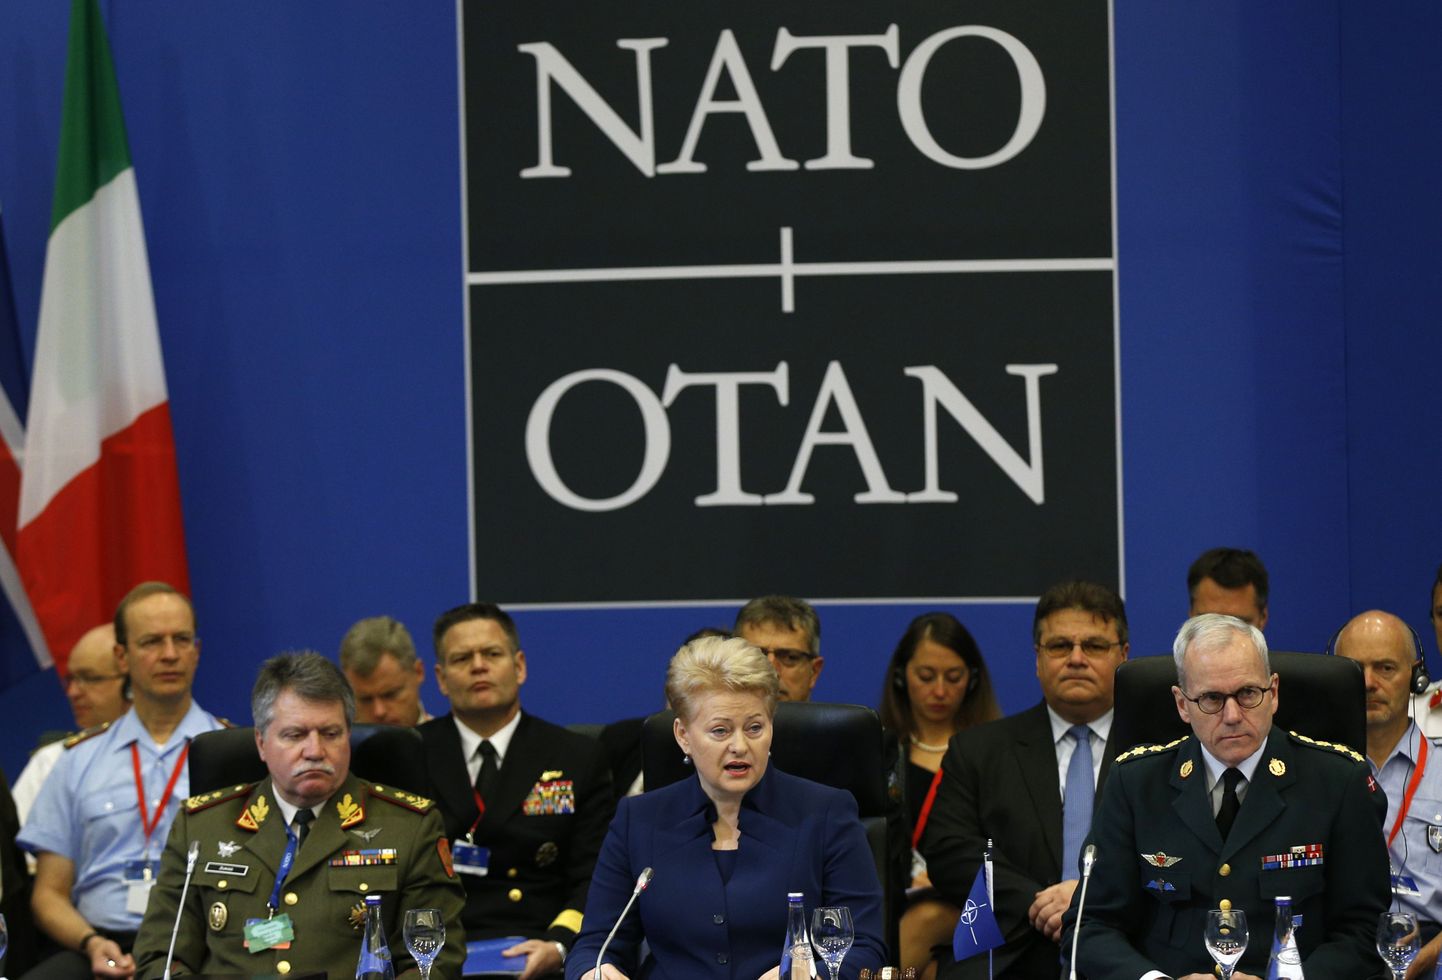 NATO sõjalise komitee istung Vilniuses 20. septembril 2014. Vasakult Leedu kaitseväe juhataja kindral Jonas Vytautas Zukas, Leedu president Dalia Grybauskaite ja NATO sõjalise komitee esimees kindral Knud Bartels.